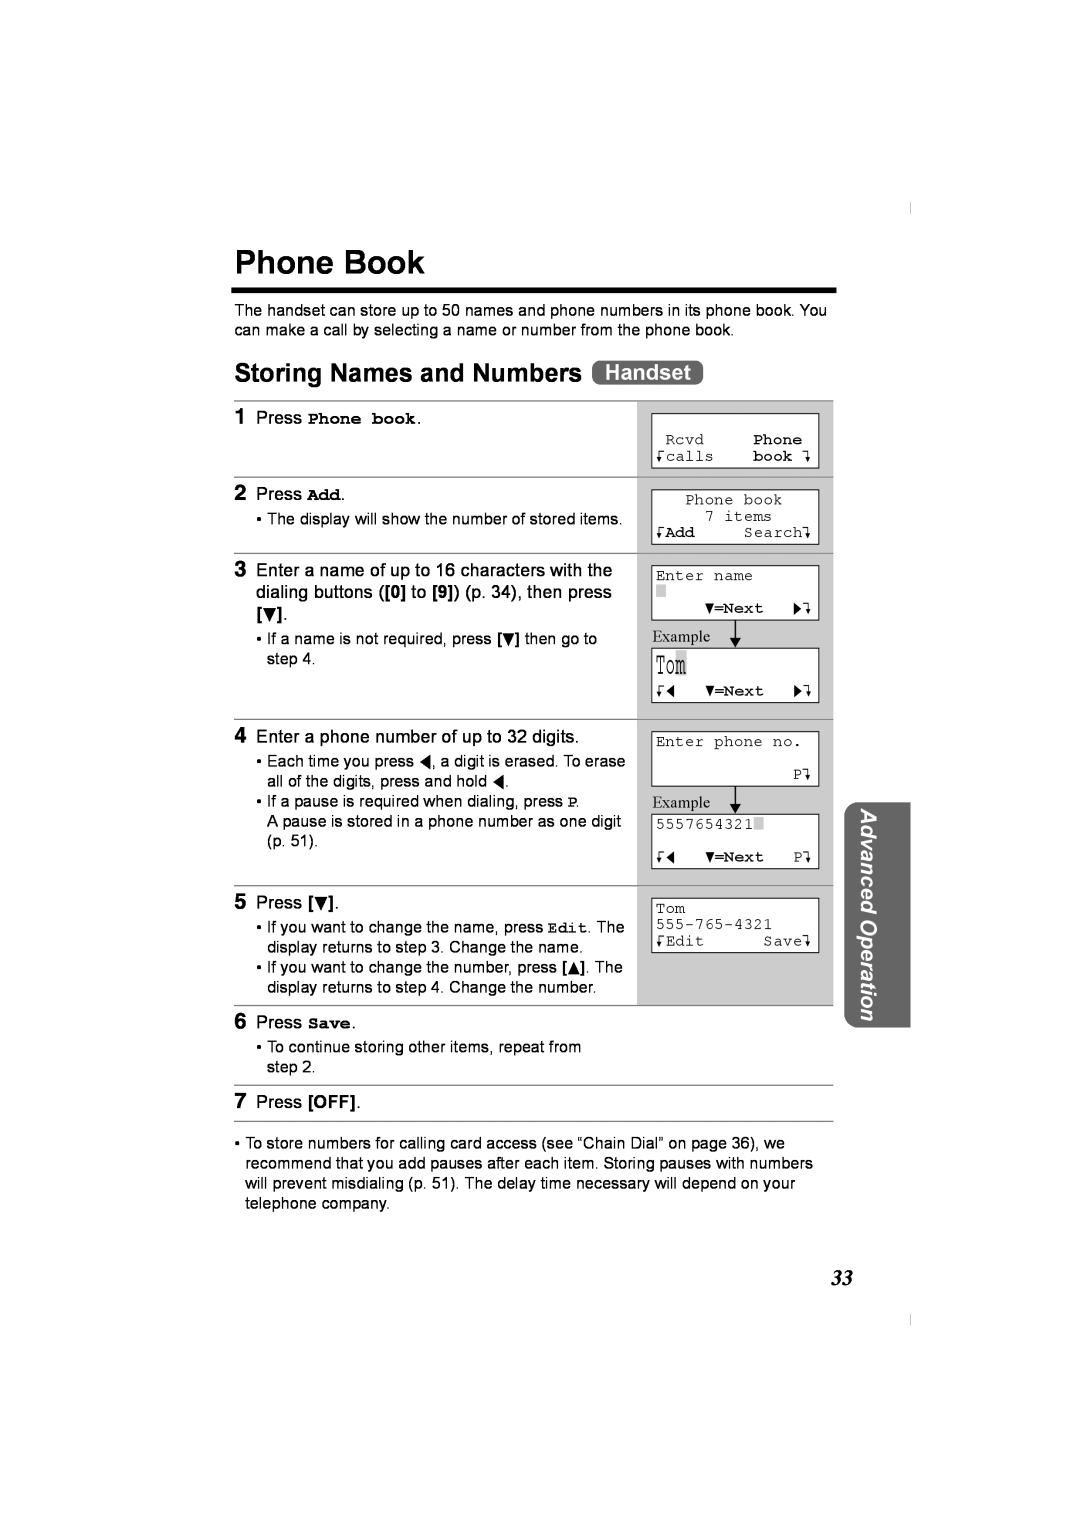 Panasonic KX-TG2336C Phone Book, Storing Names and Numbers Handset, Press Phone book, Press Add, Press d, Press Save, KAdd 